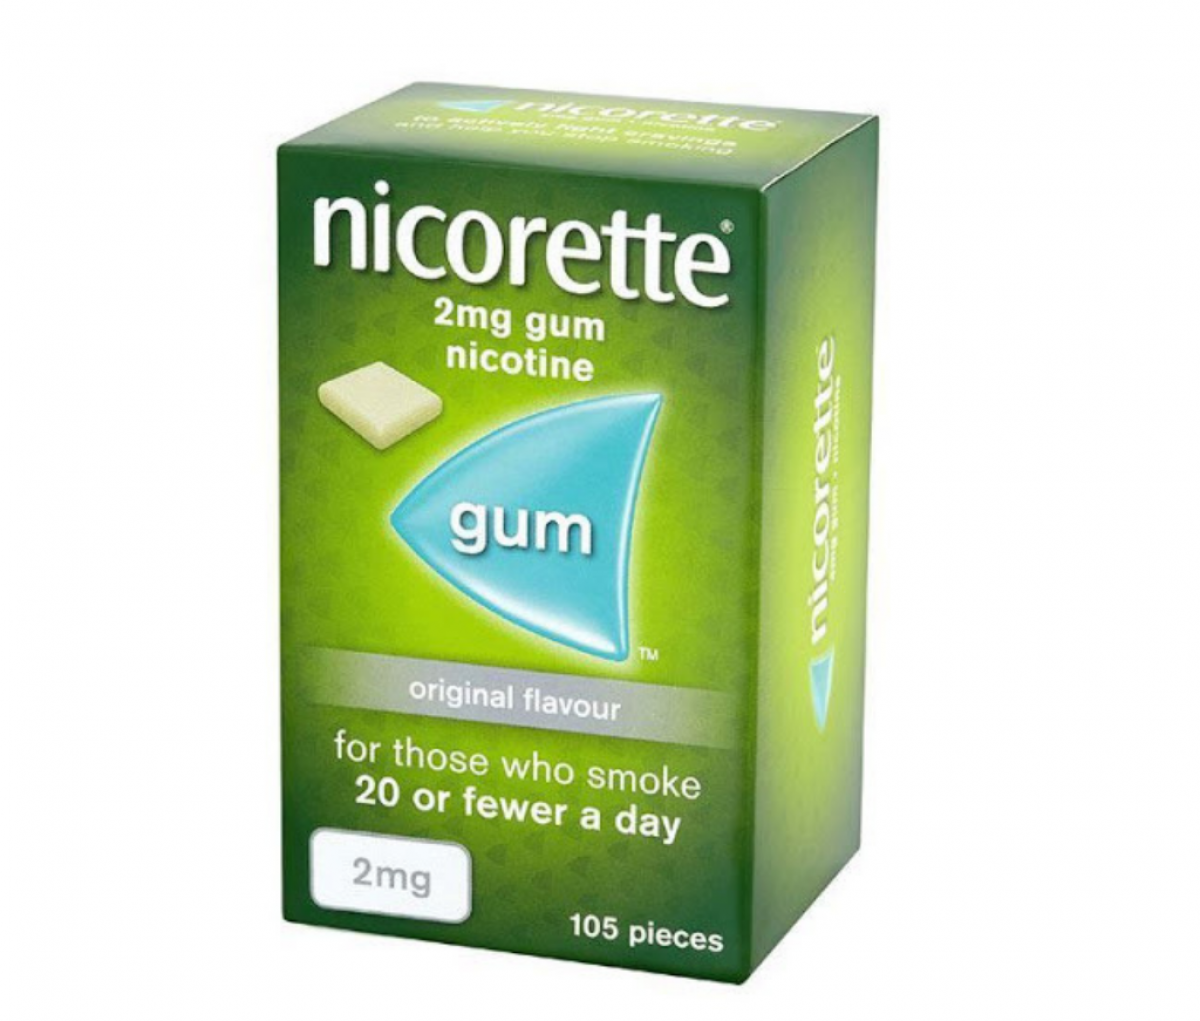 Nicorette 2mg Original Flavor Gum, 105 Pieces